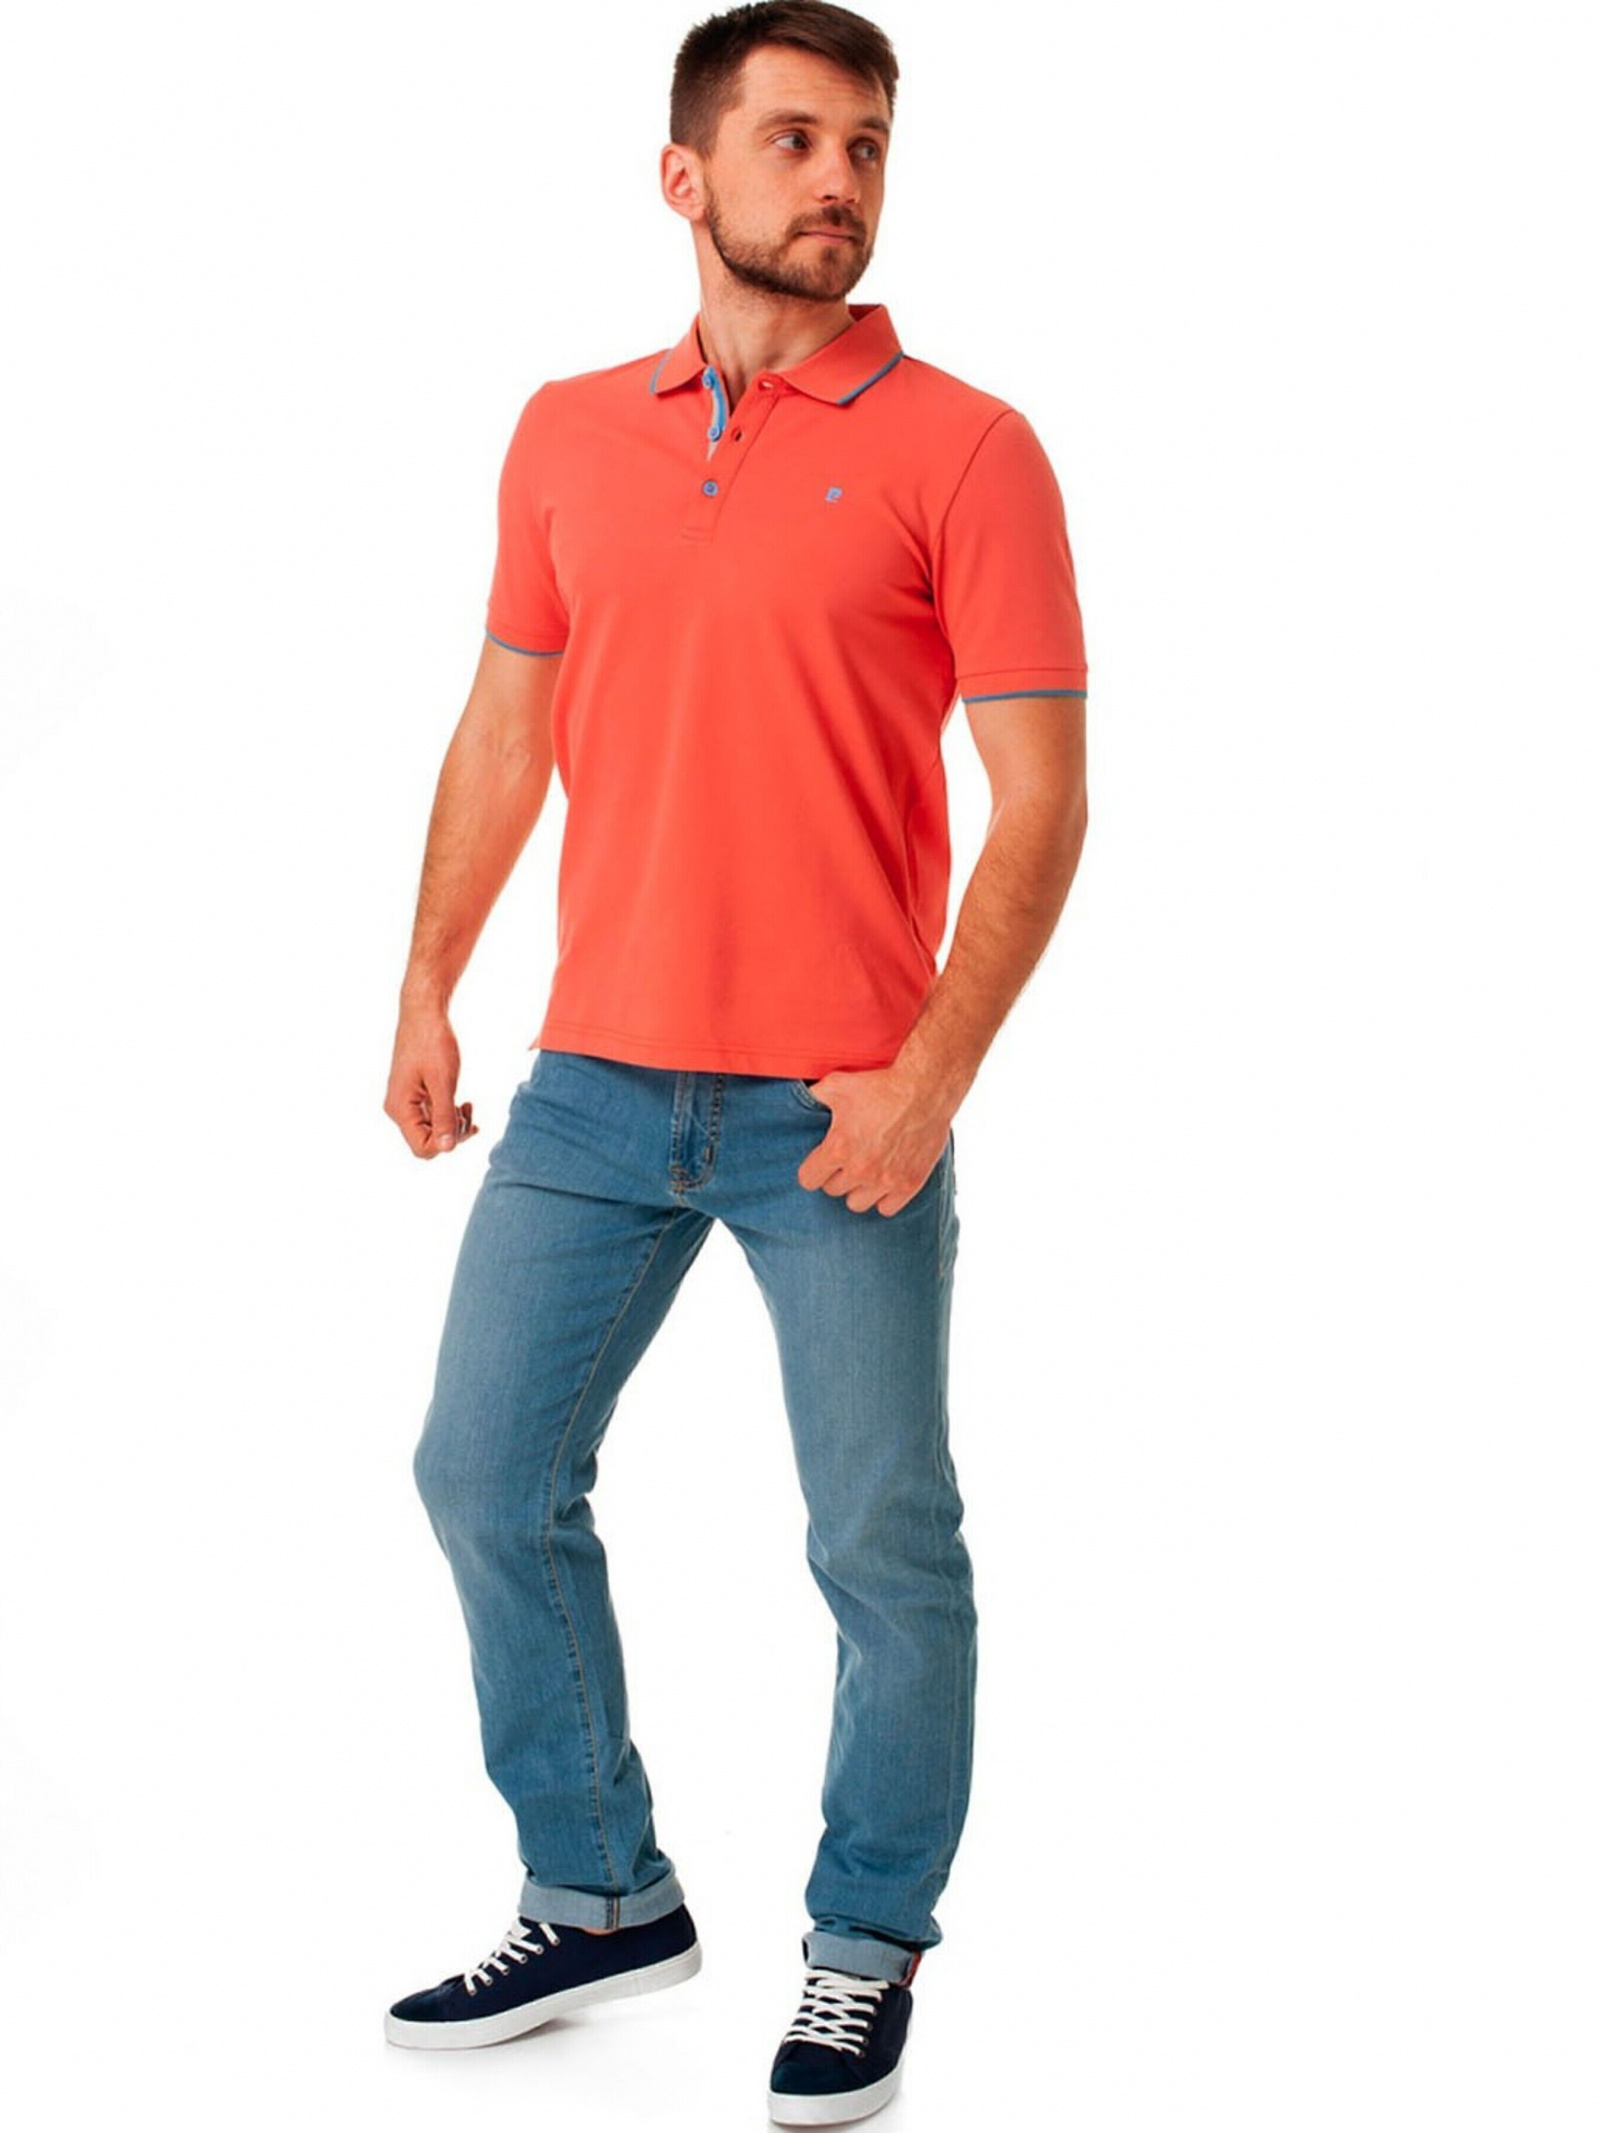 Зауженные джинсы Pierre Cardin 7635.18 для мужчин, цвет: Голубой - купить в  Киеве, Украине в магазине Intertop: цена, фото, отзывы